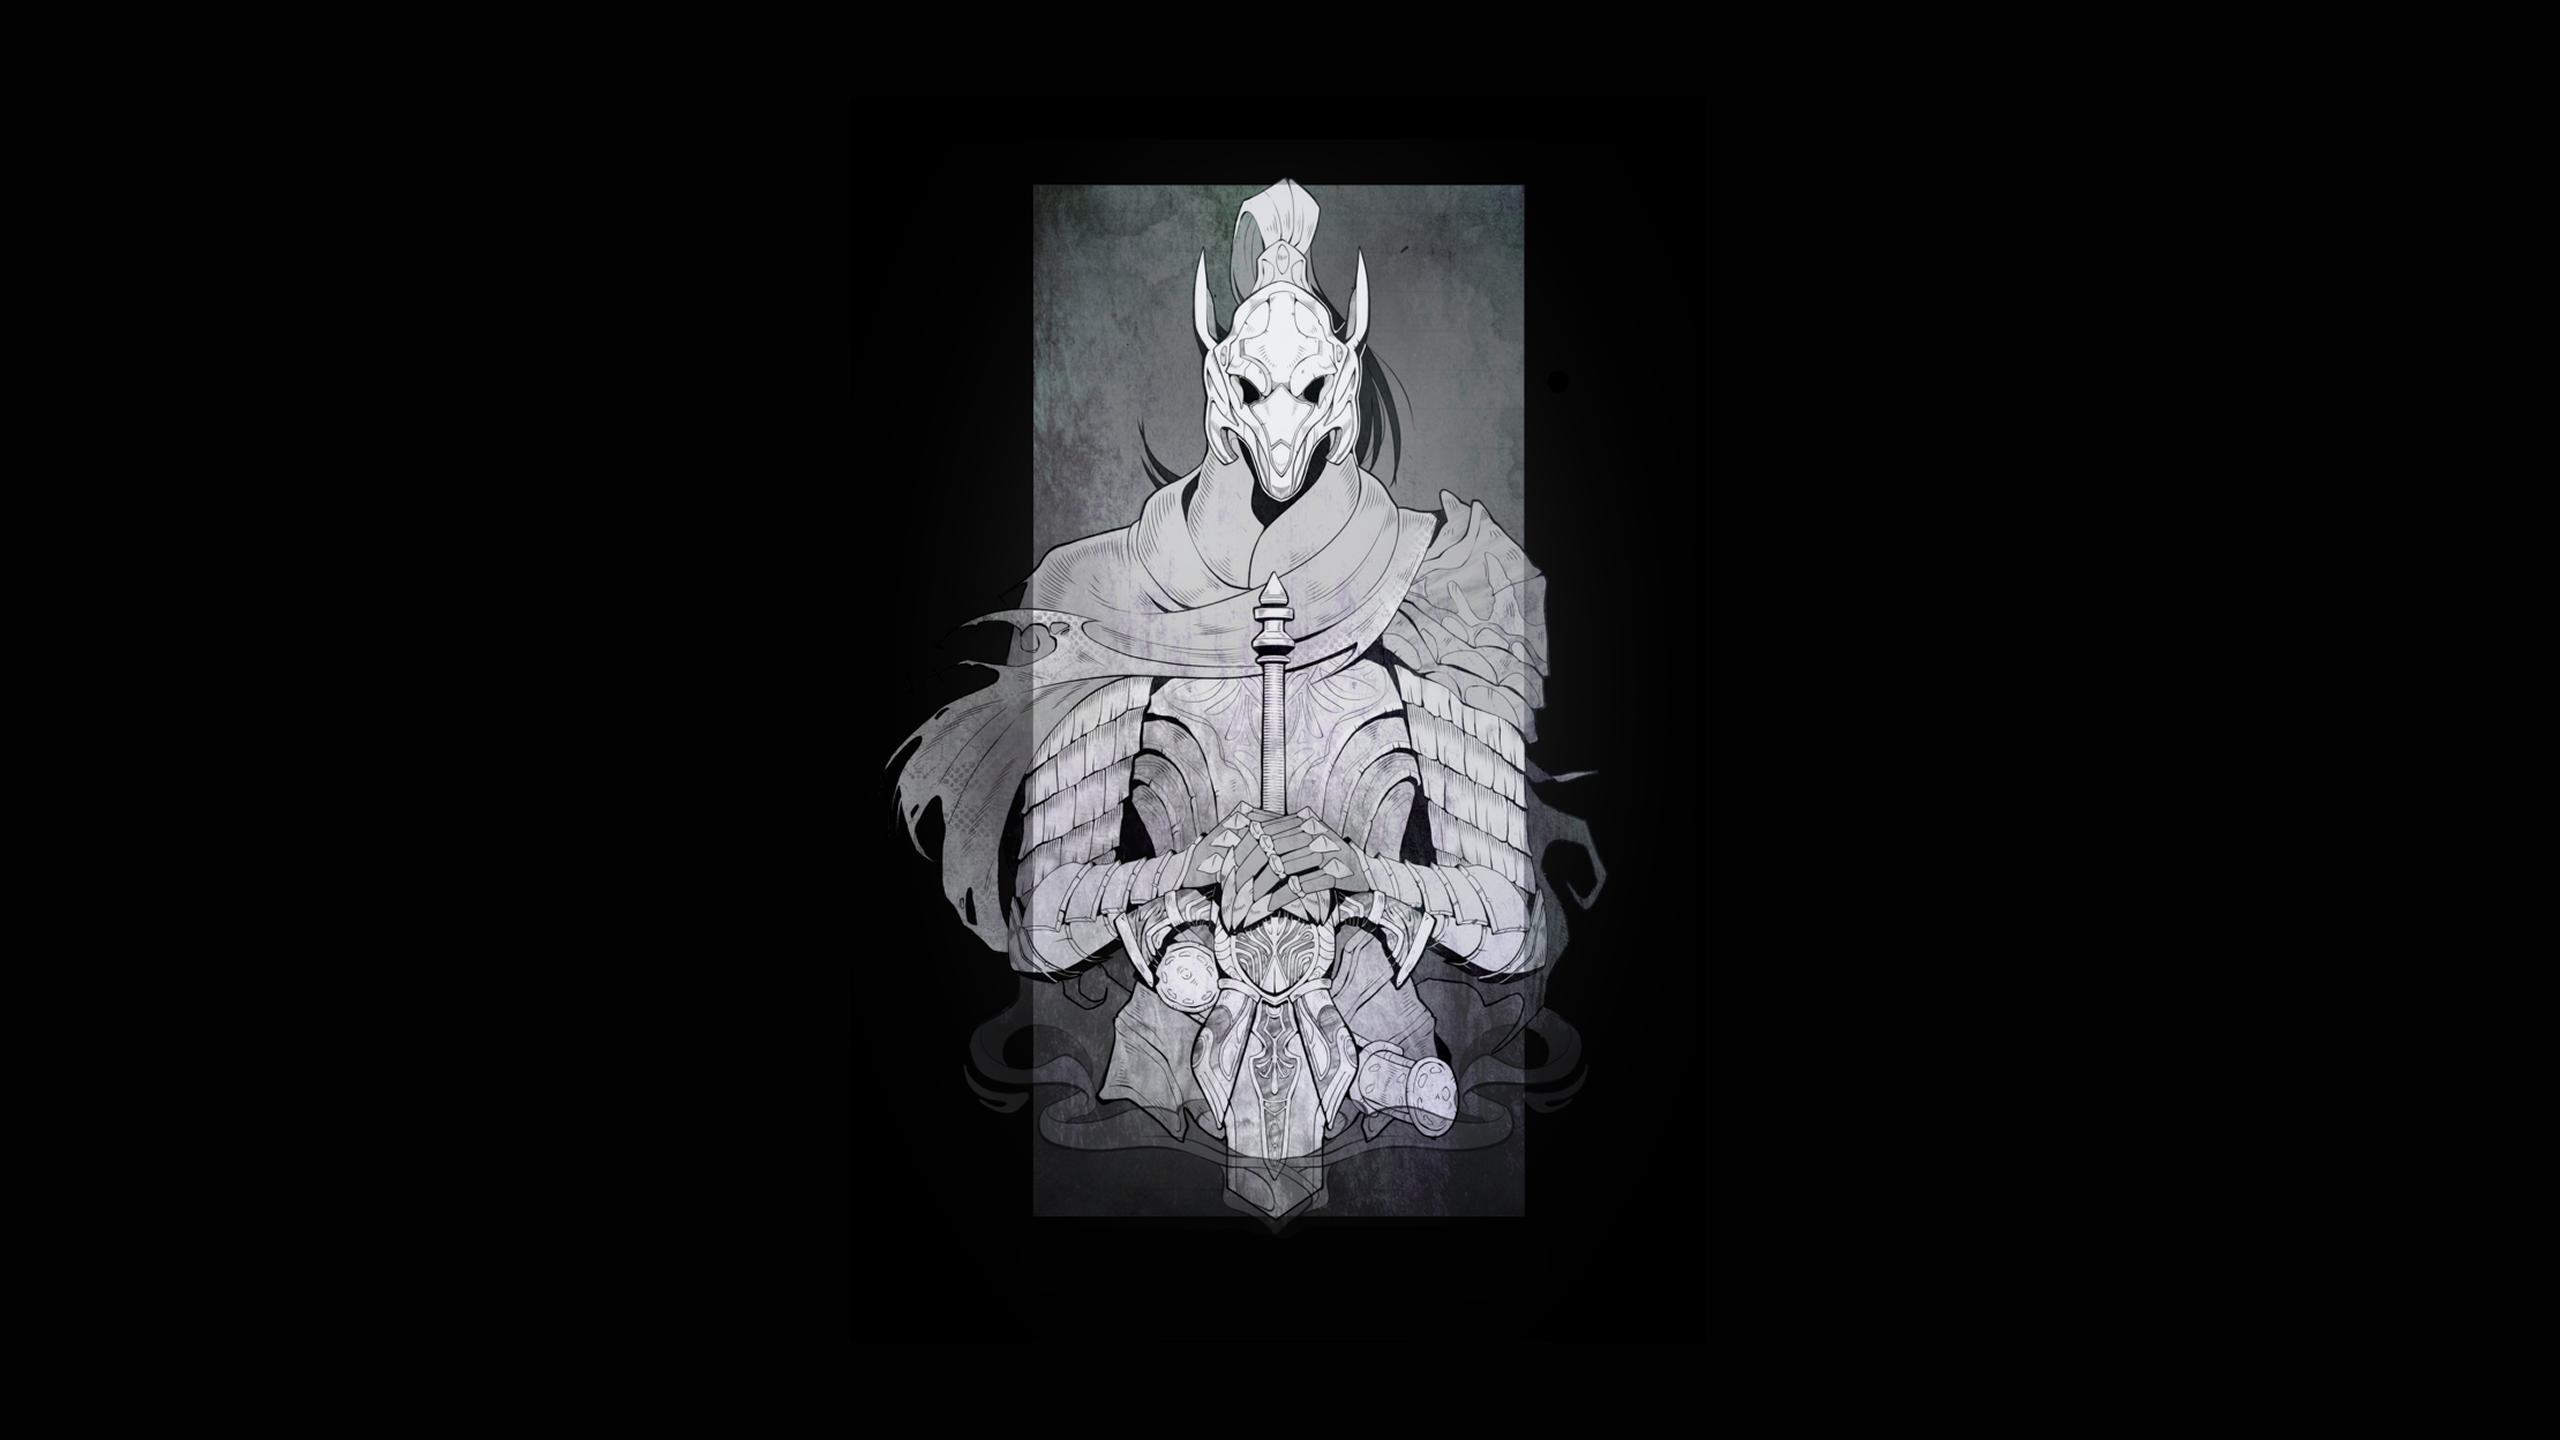 HD wallpaper, Artorias The Abysswalker, Dark Souls, Knight, Armor